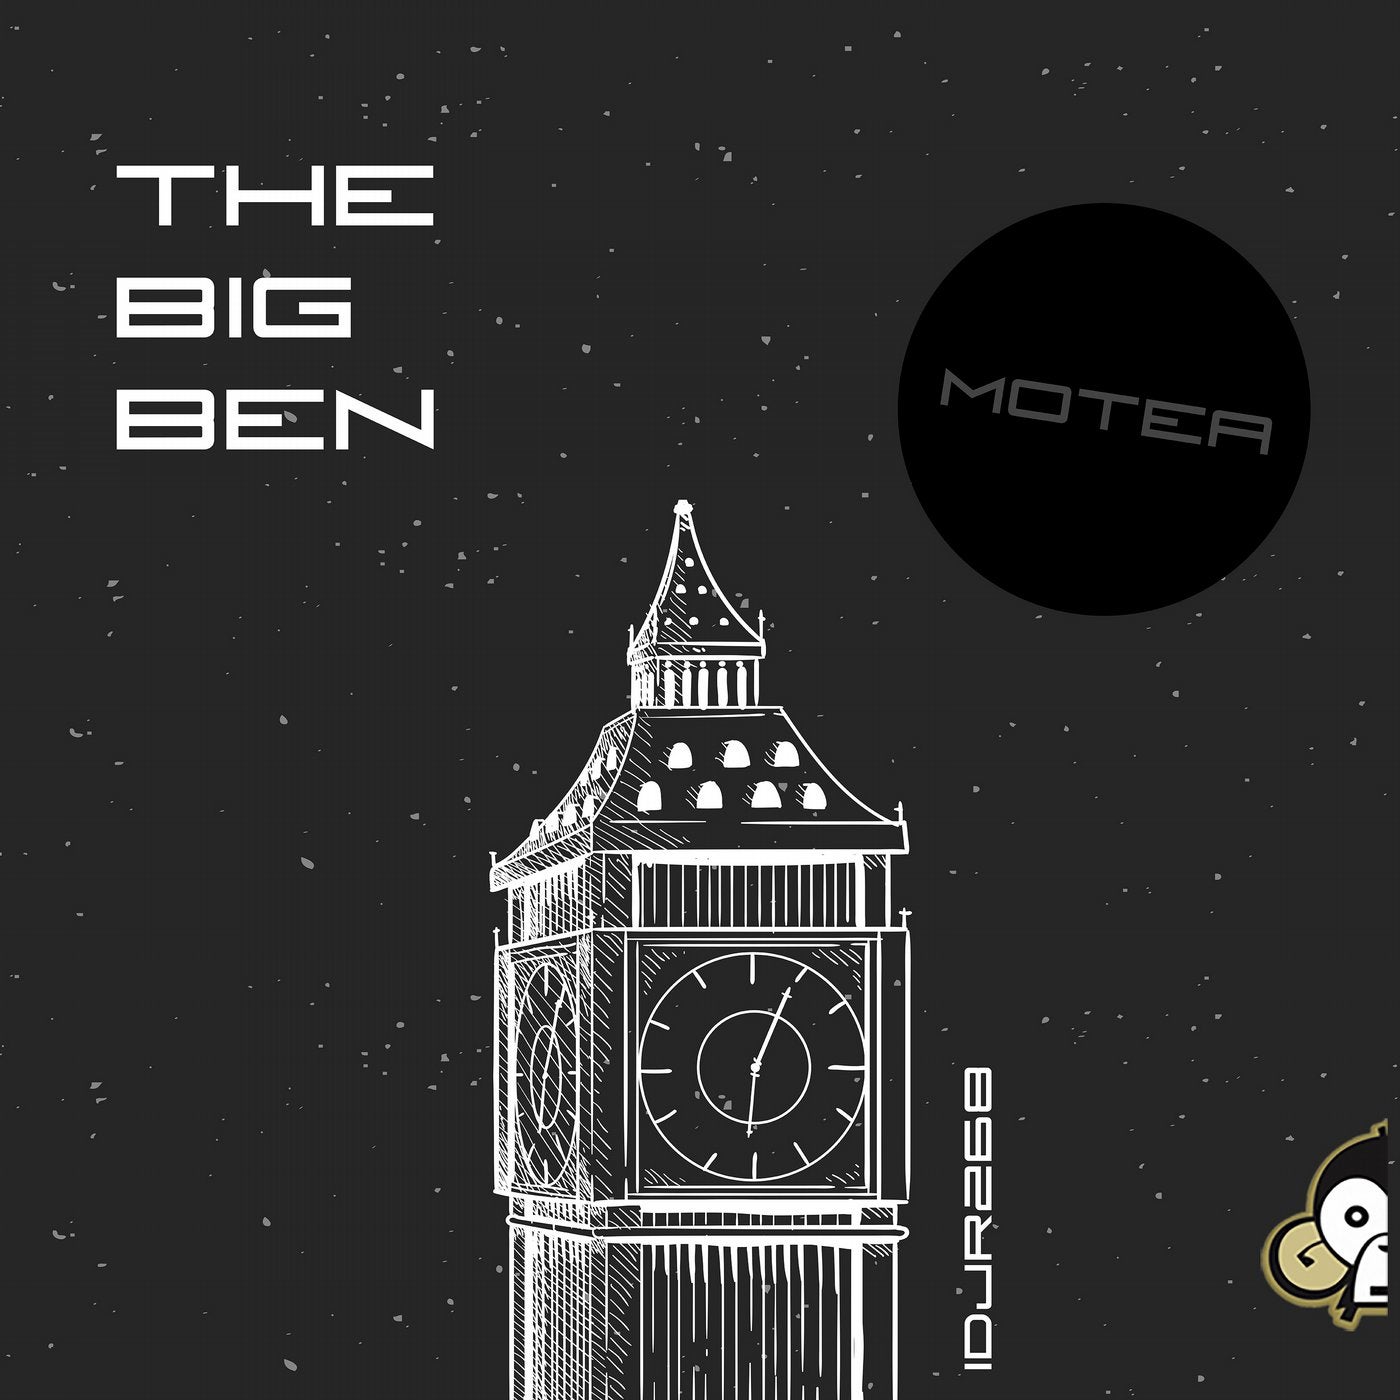 The Big Ben